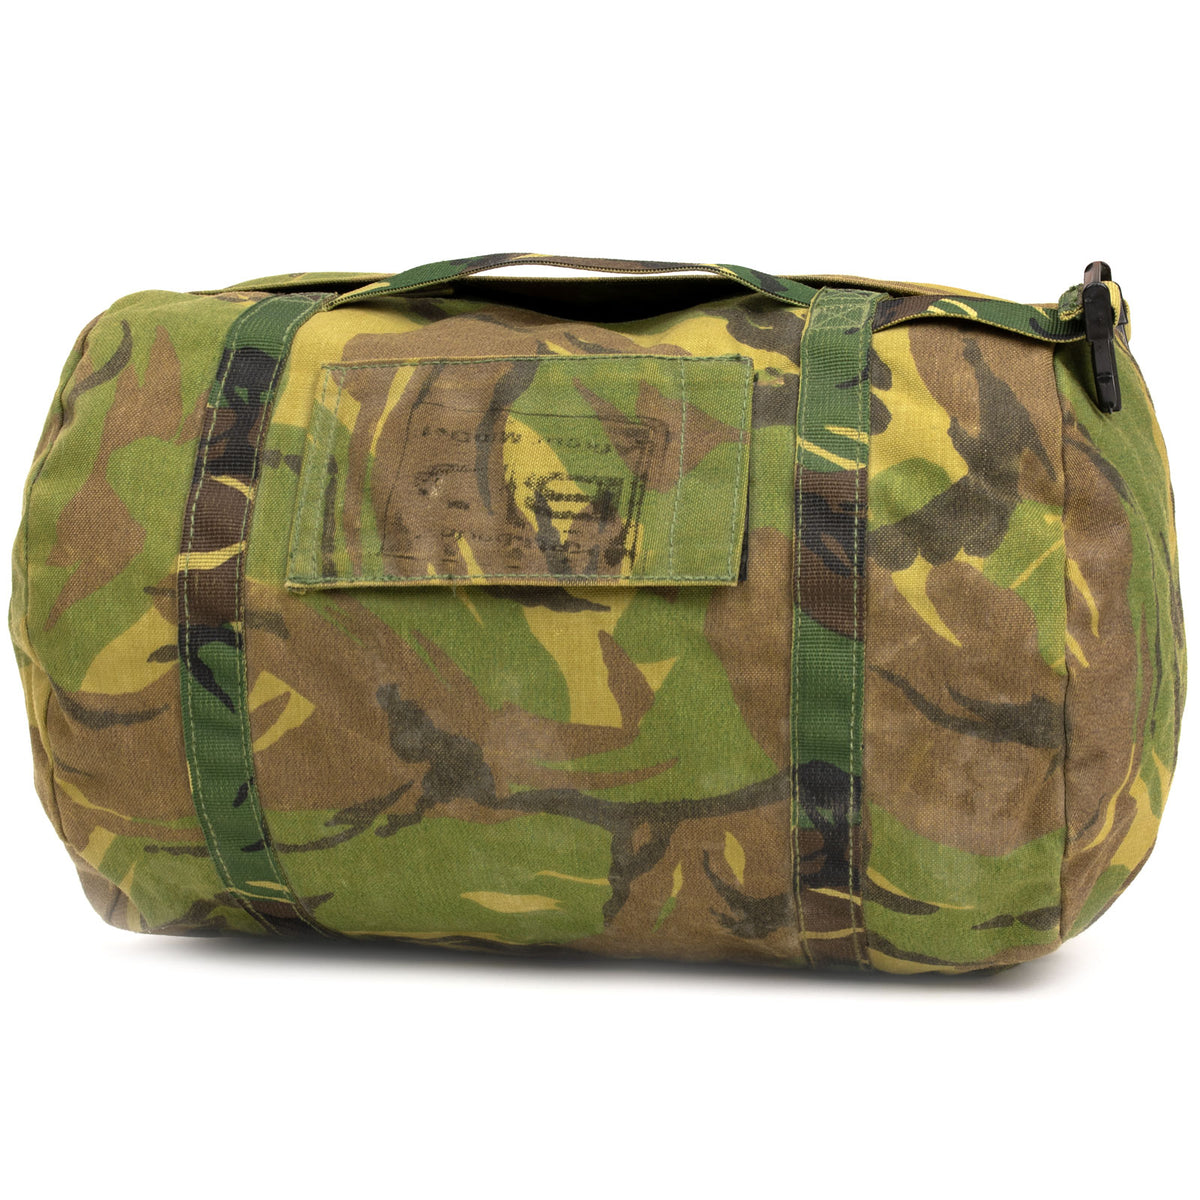 Dutch Woodland Gear Bag